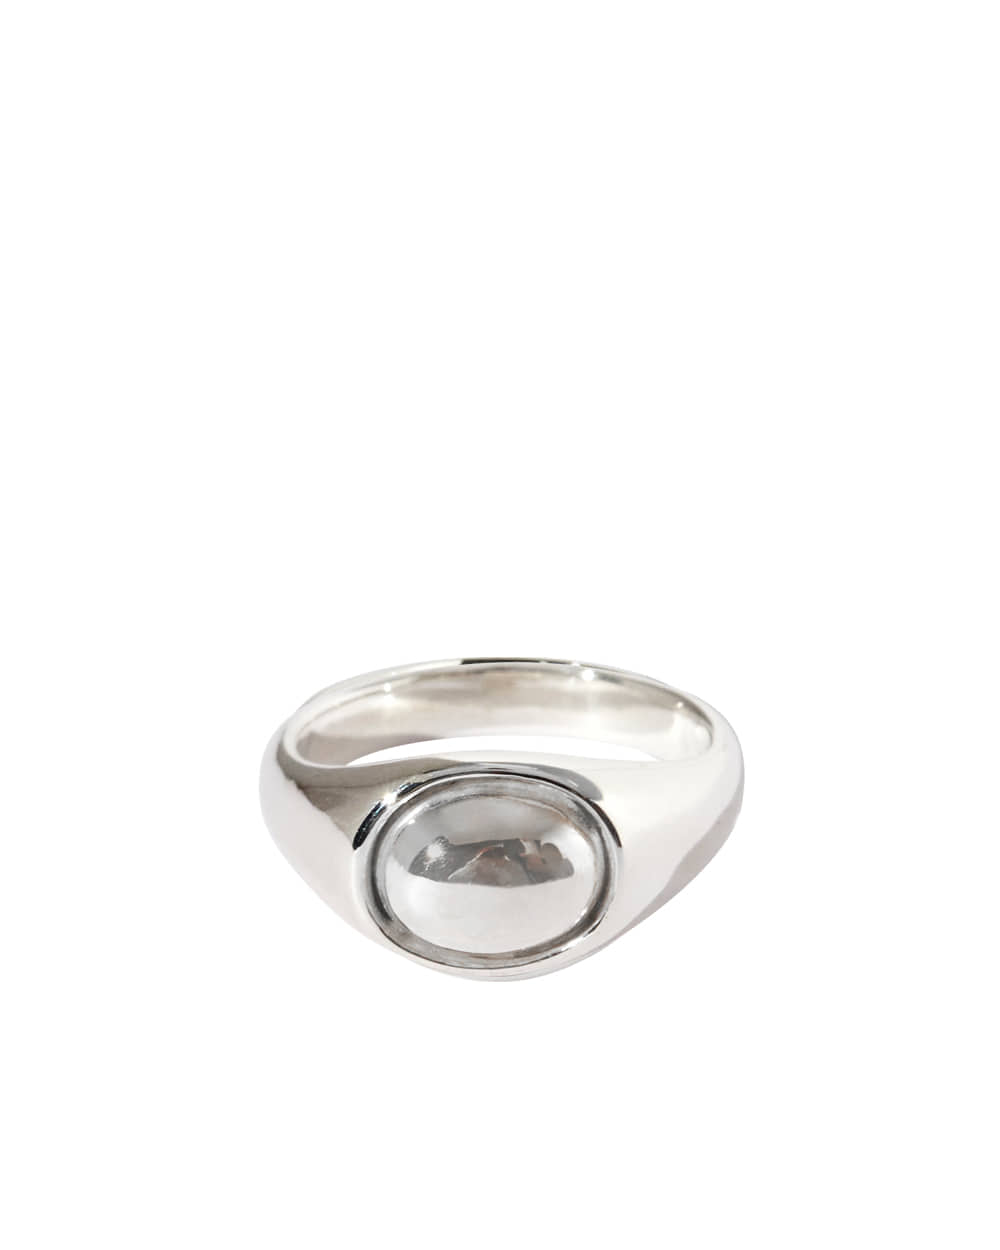 Noel silverstone Ring Silver / Silver